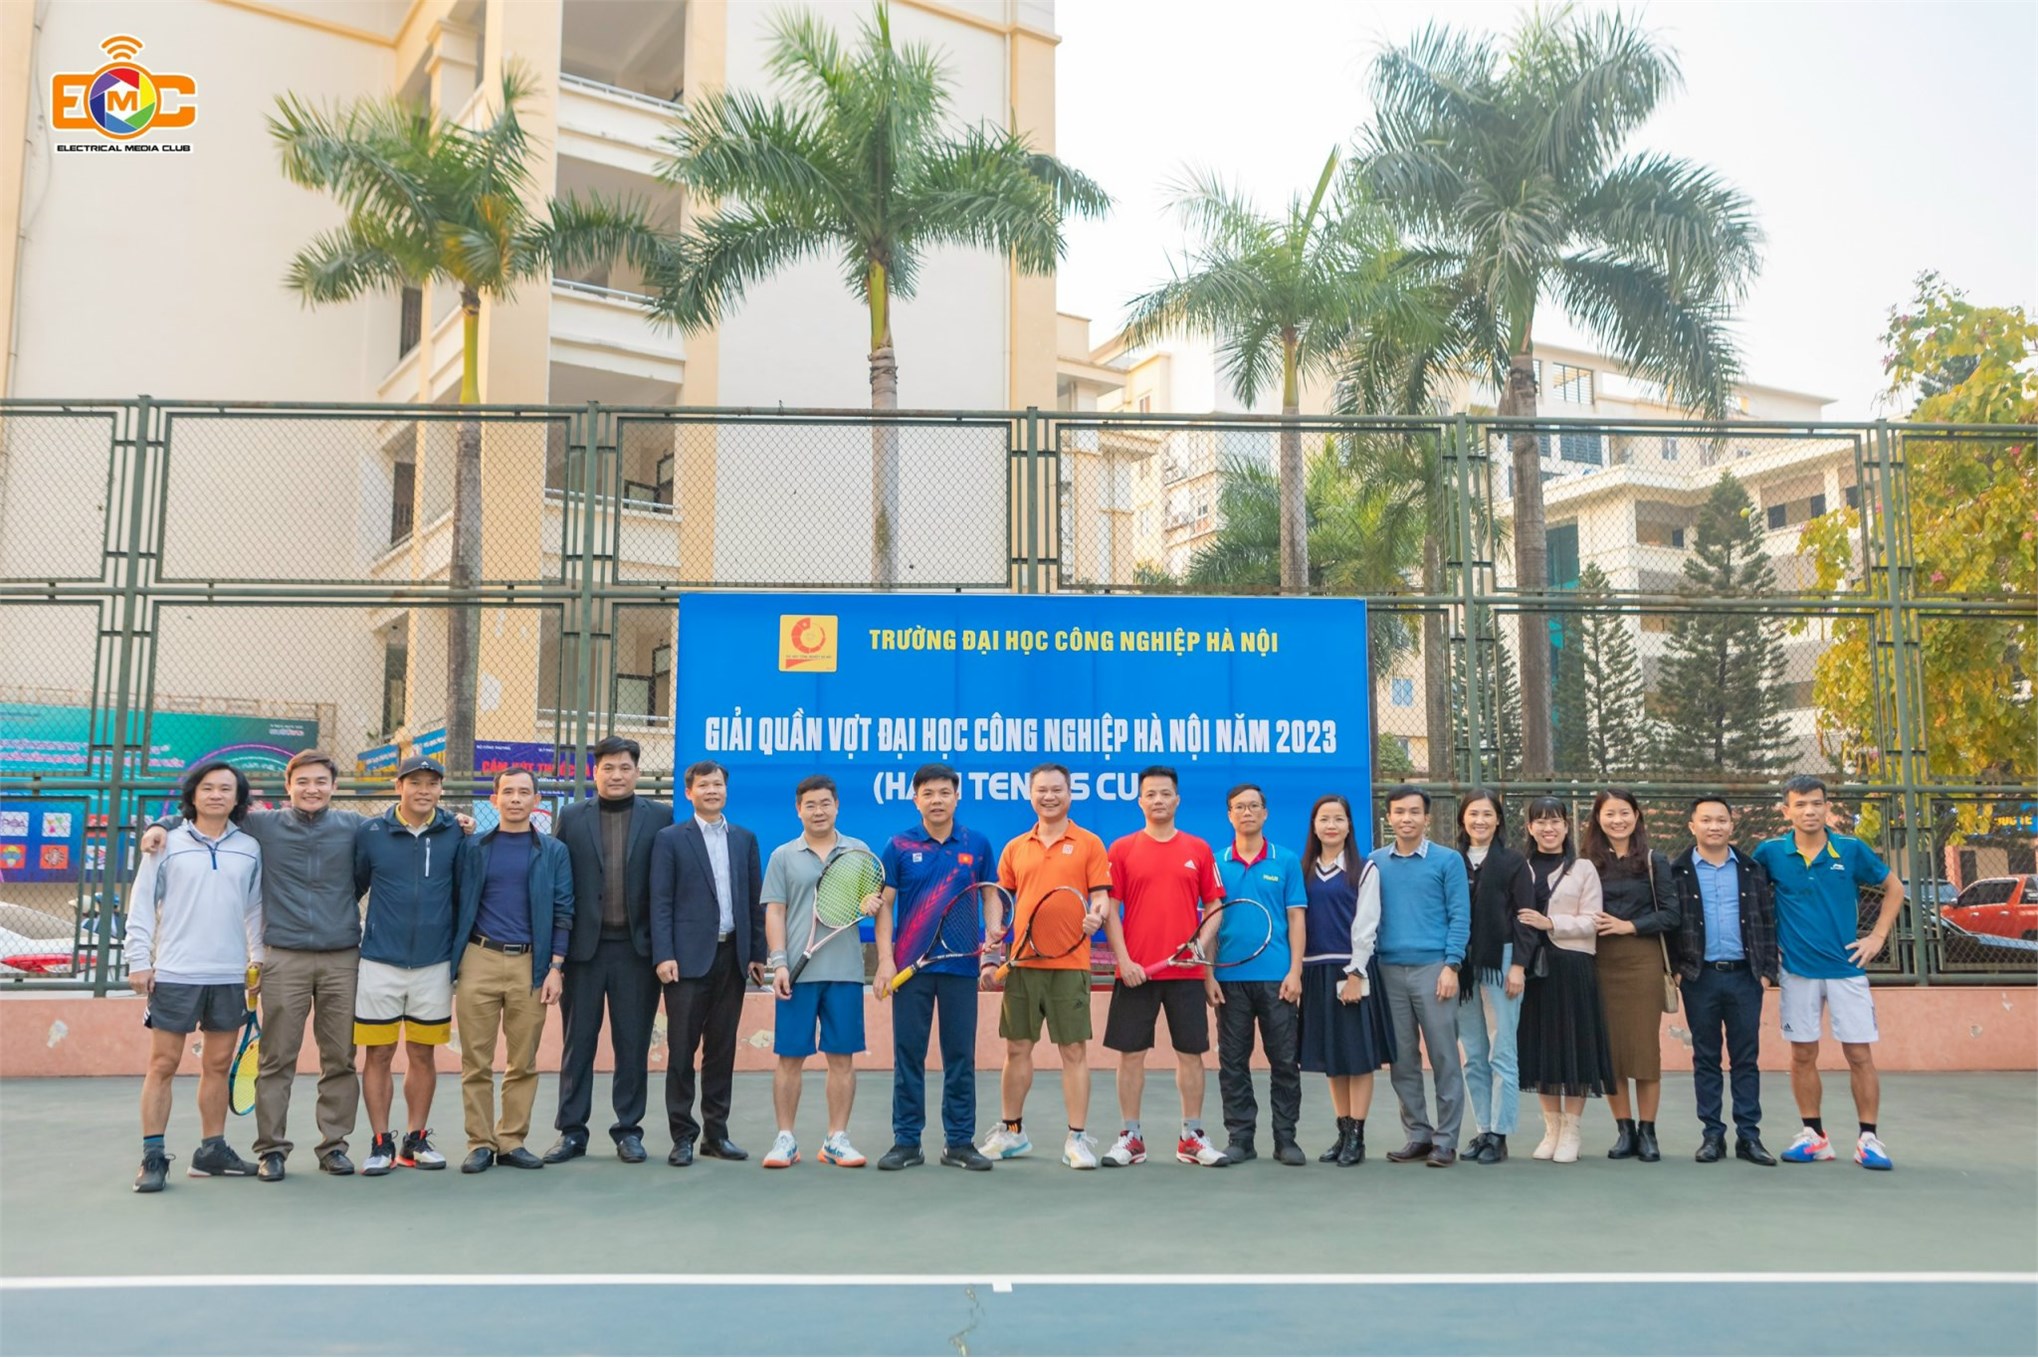 Các Vận động viên Khoa ĐIện tham dự Giải Quần vợt Đại học Công nghiệp Hà Nội năm 2023